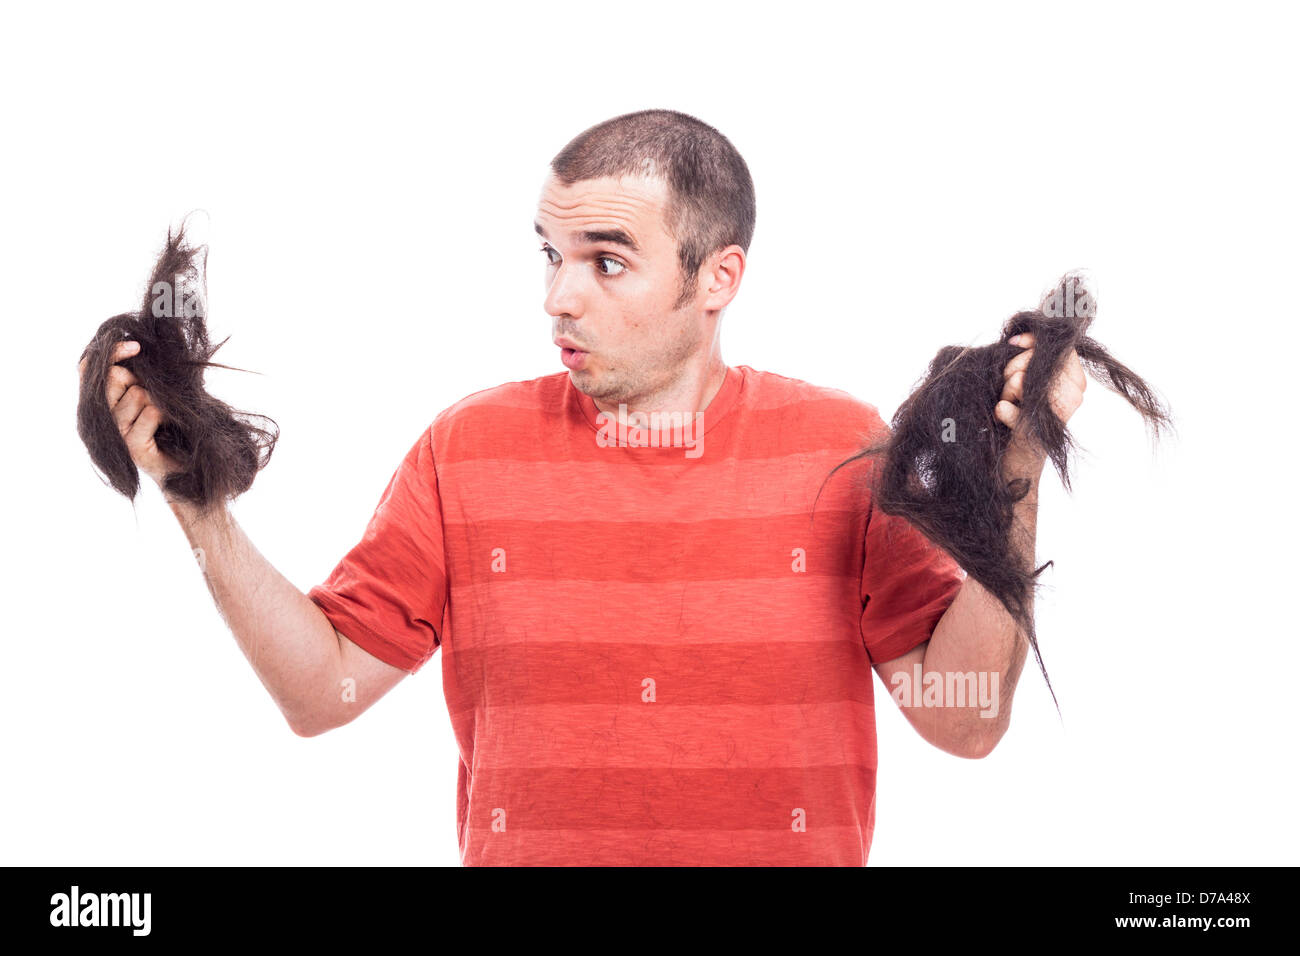 Sorpreso uomo calvo tenendo i suoi lunghi capelli rasata, isolato su sfondo bianco Foto Stock